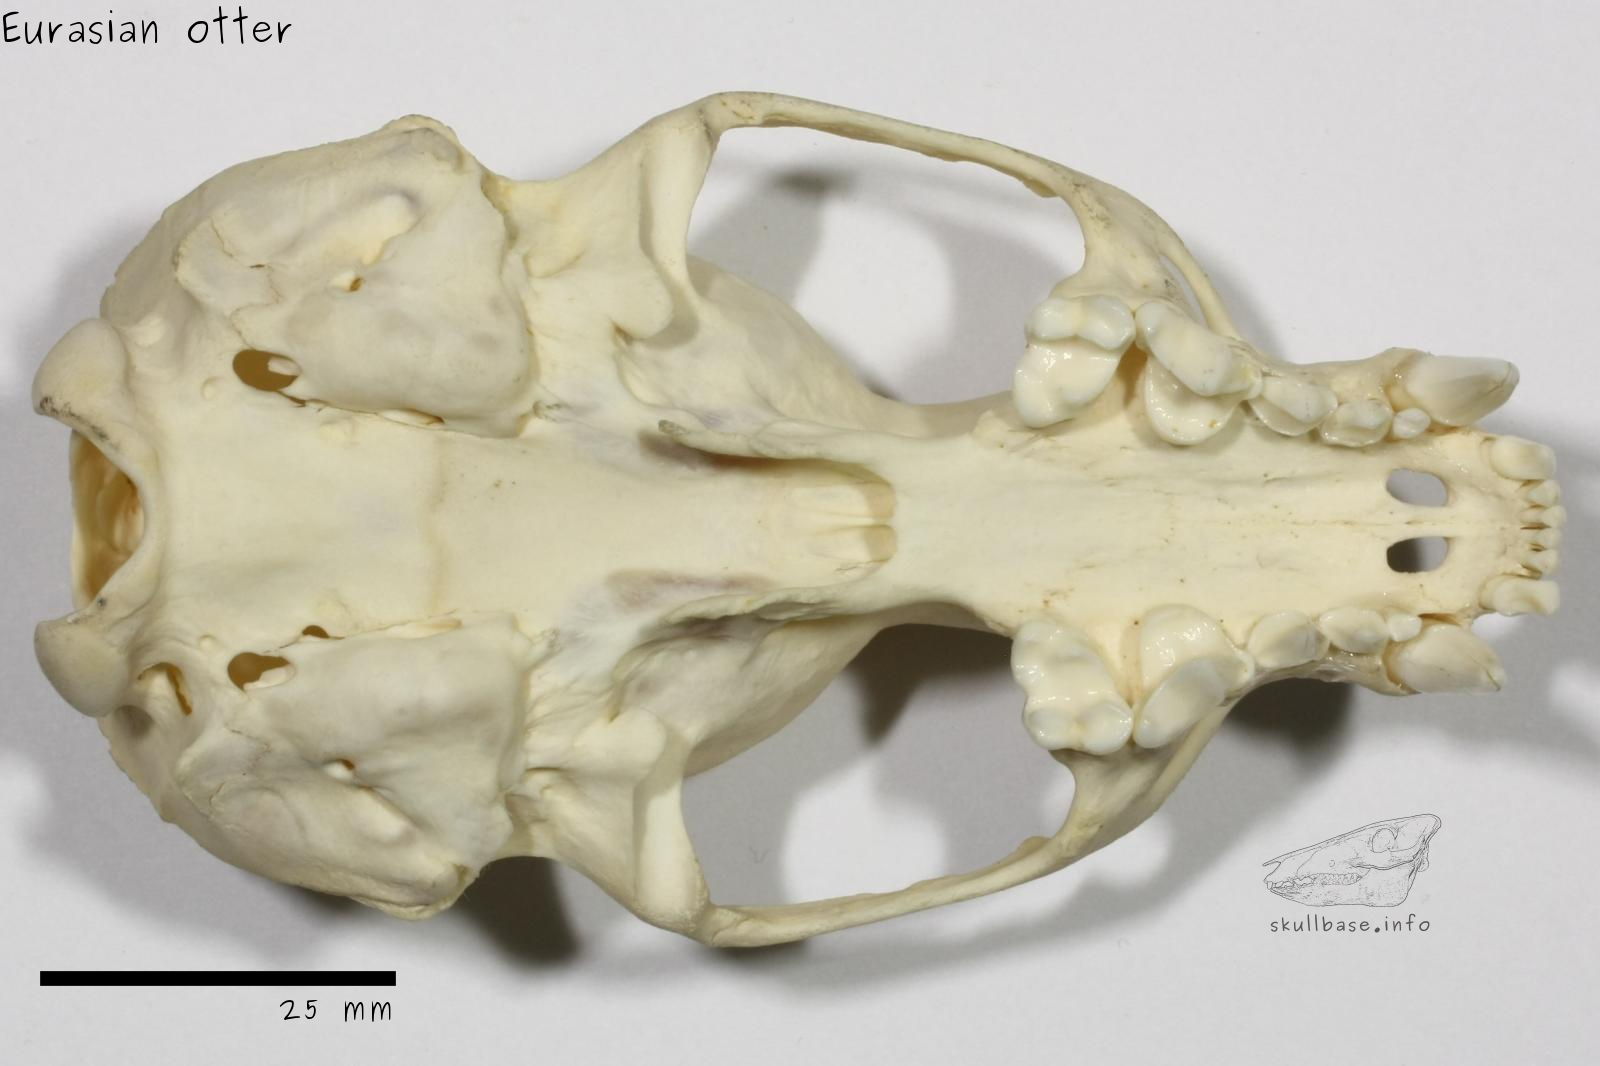 Eurasian otter (Lutra lutra) skull ventral view